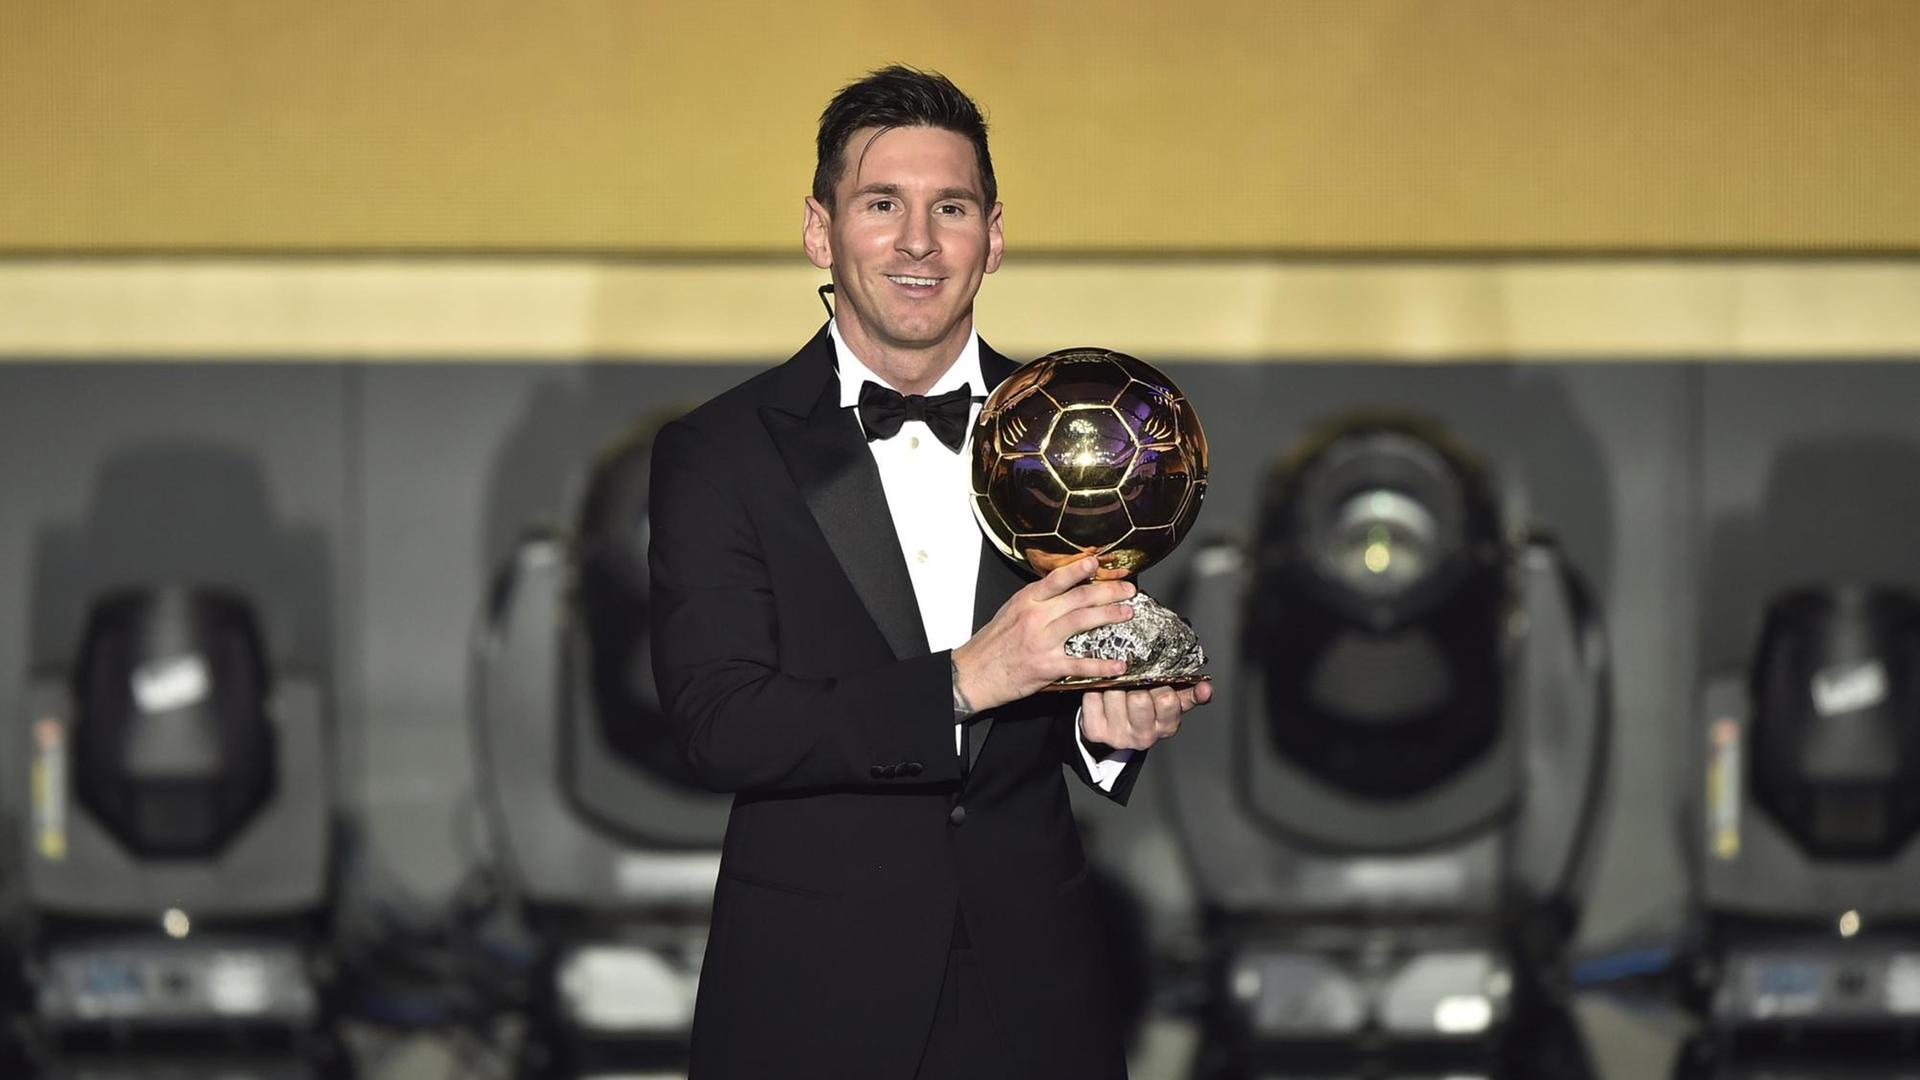 Der Fußballer Lionel Messi steht bei der Gala zum Weltfußballer des Jahres im schwarzen Anzug auf der BÜhne und hält lachend seine Auszeichnung in den Händen.